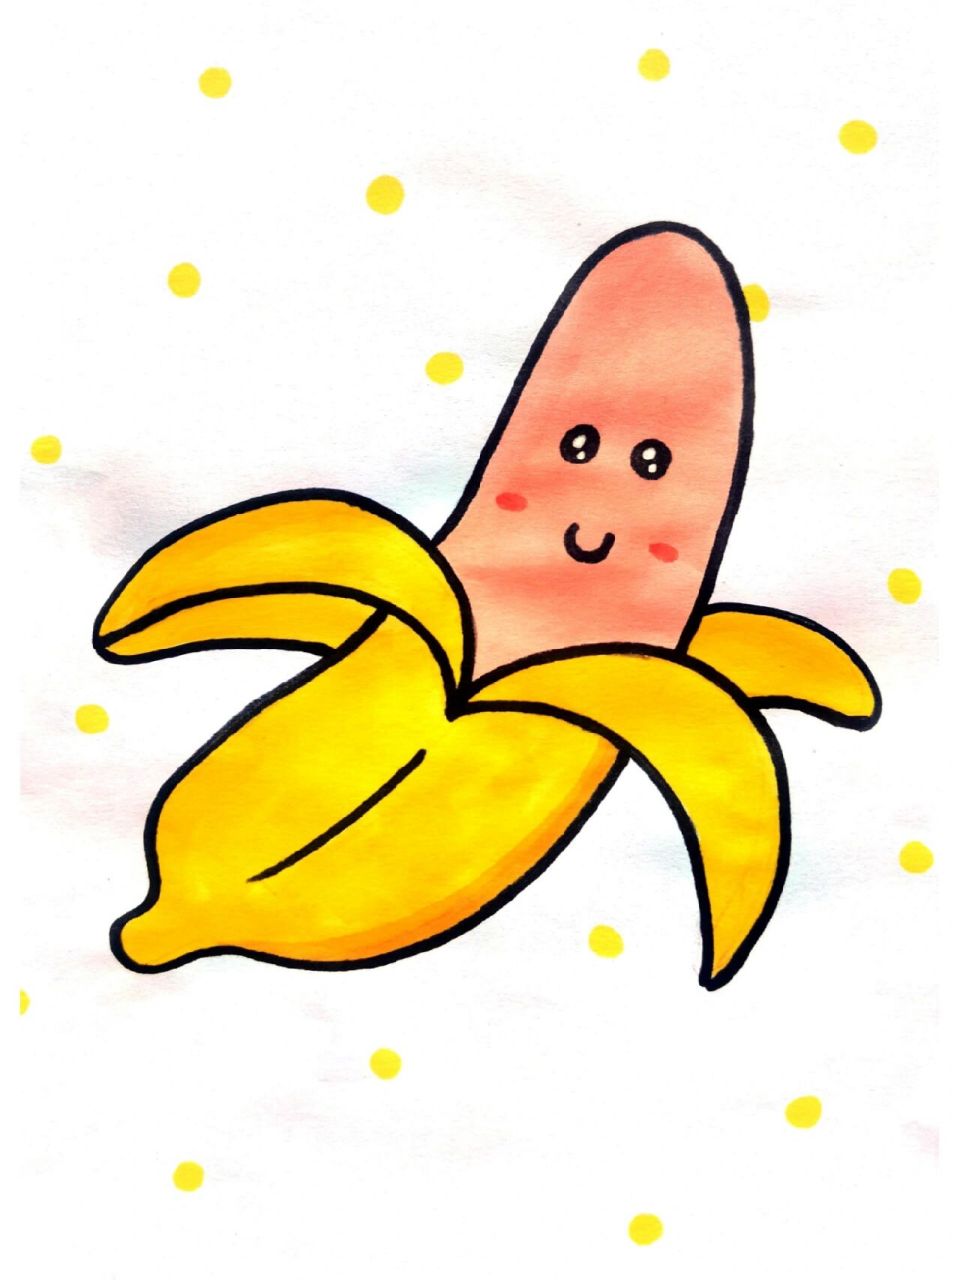 香蕉简笔画,水果简笔画 香蕉简笔画,水果简笔画,收藏起来留给孩子画吧